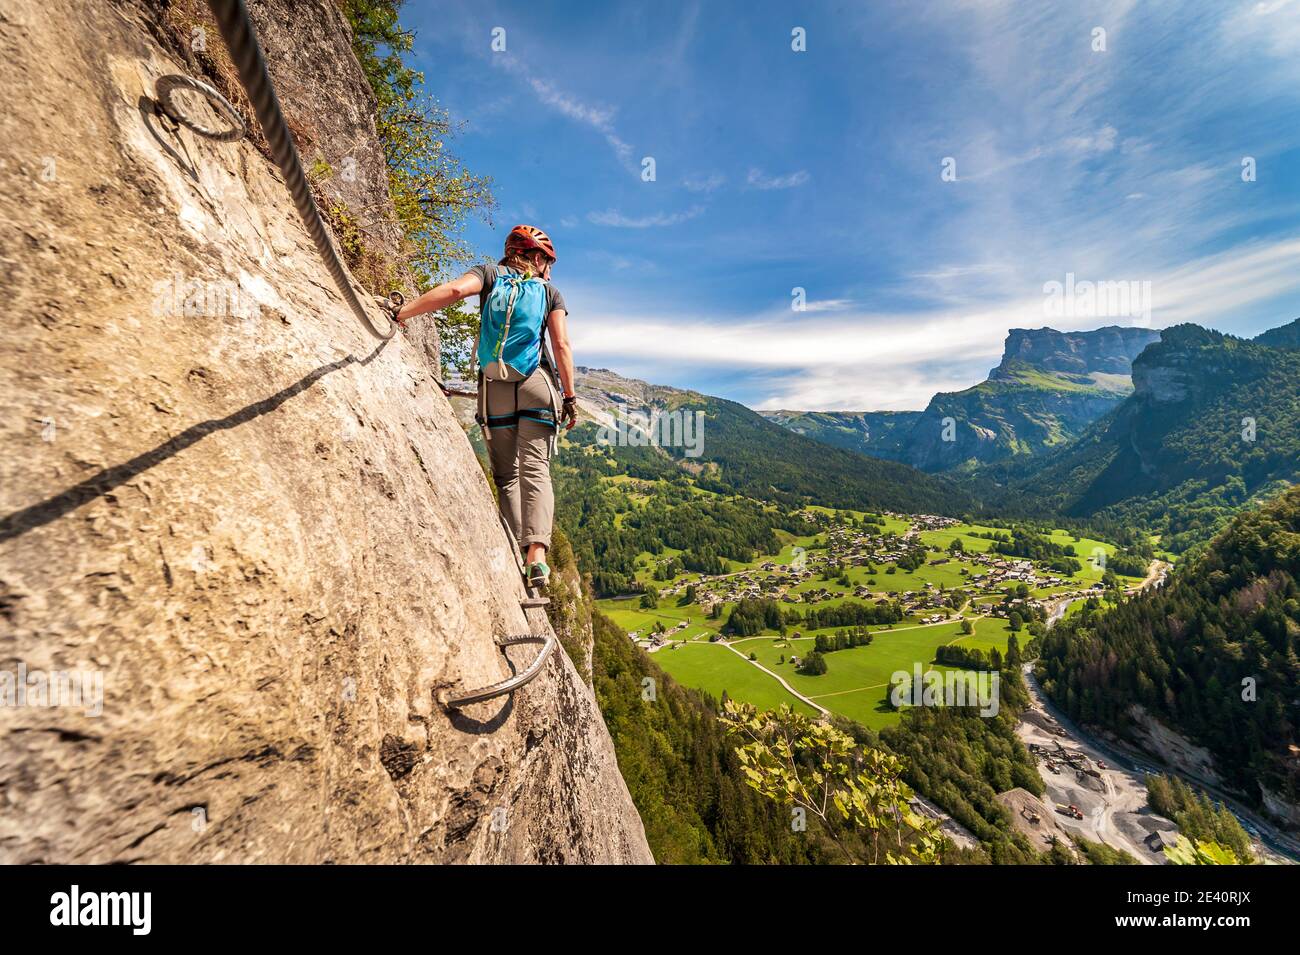 Klettersteig in Mont-Sixt-Fer-a-Cheval (Französische Alpen). Junge Frau auf Klettersteig-Route, eine Mischung aus Wandern und Bergsteigen durch kurze Seile unterstützt, c Stockfoto